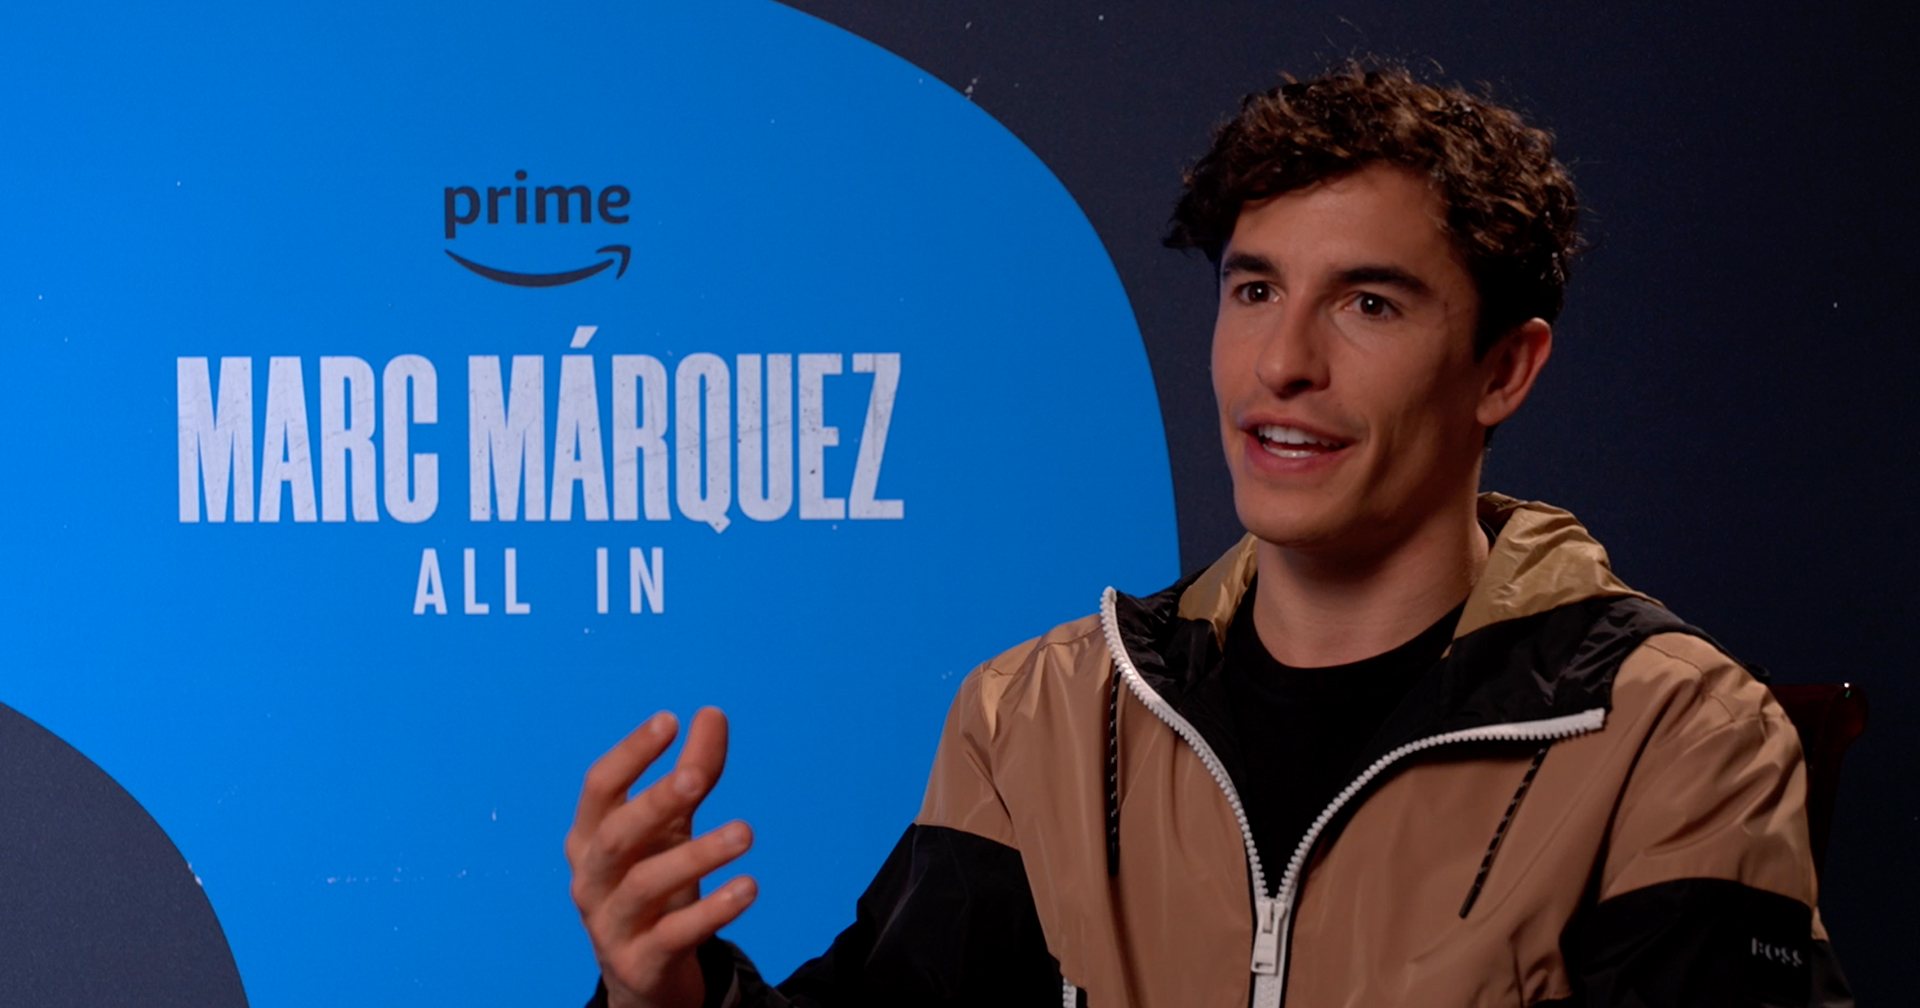 สัมภาษณ์พิเศษ Marc Marquez แชมป์โลก MotoGP 8 สมัย กับซีรีส์สารคดีสะท้อนชีวิตเรื่องแรกของเขา